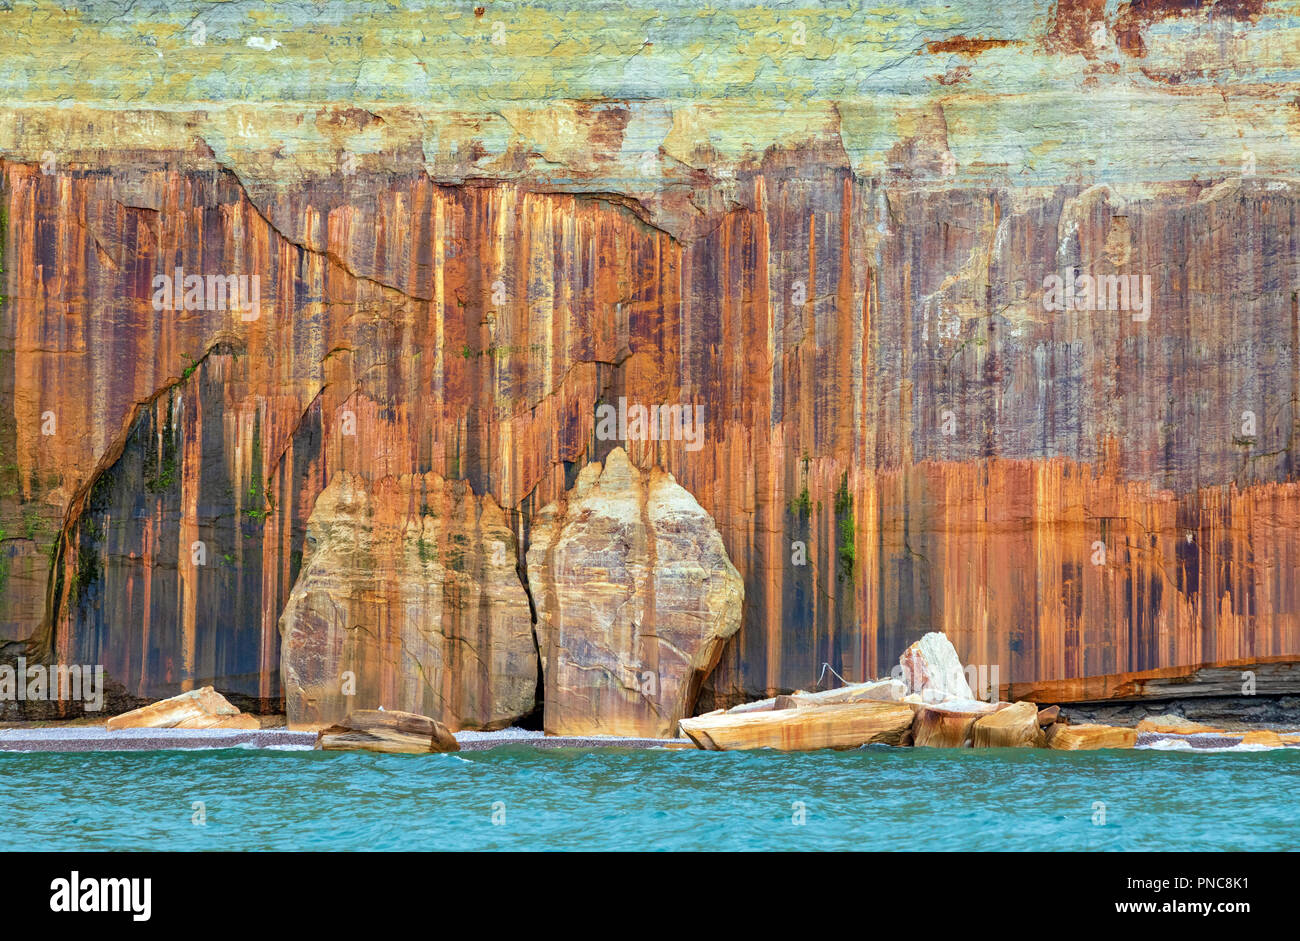 Striature minerali scogliera a Pictured Rocks National Lakeshore nella Penisola Superiore del Michigan con Lago Superior in primo piano Foto Stock